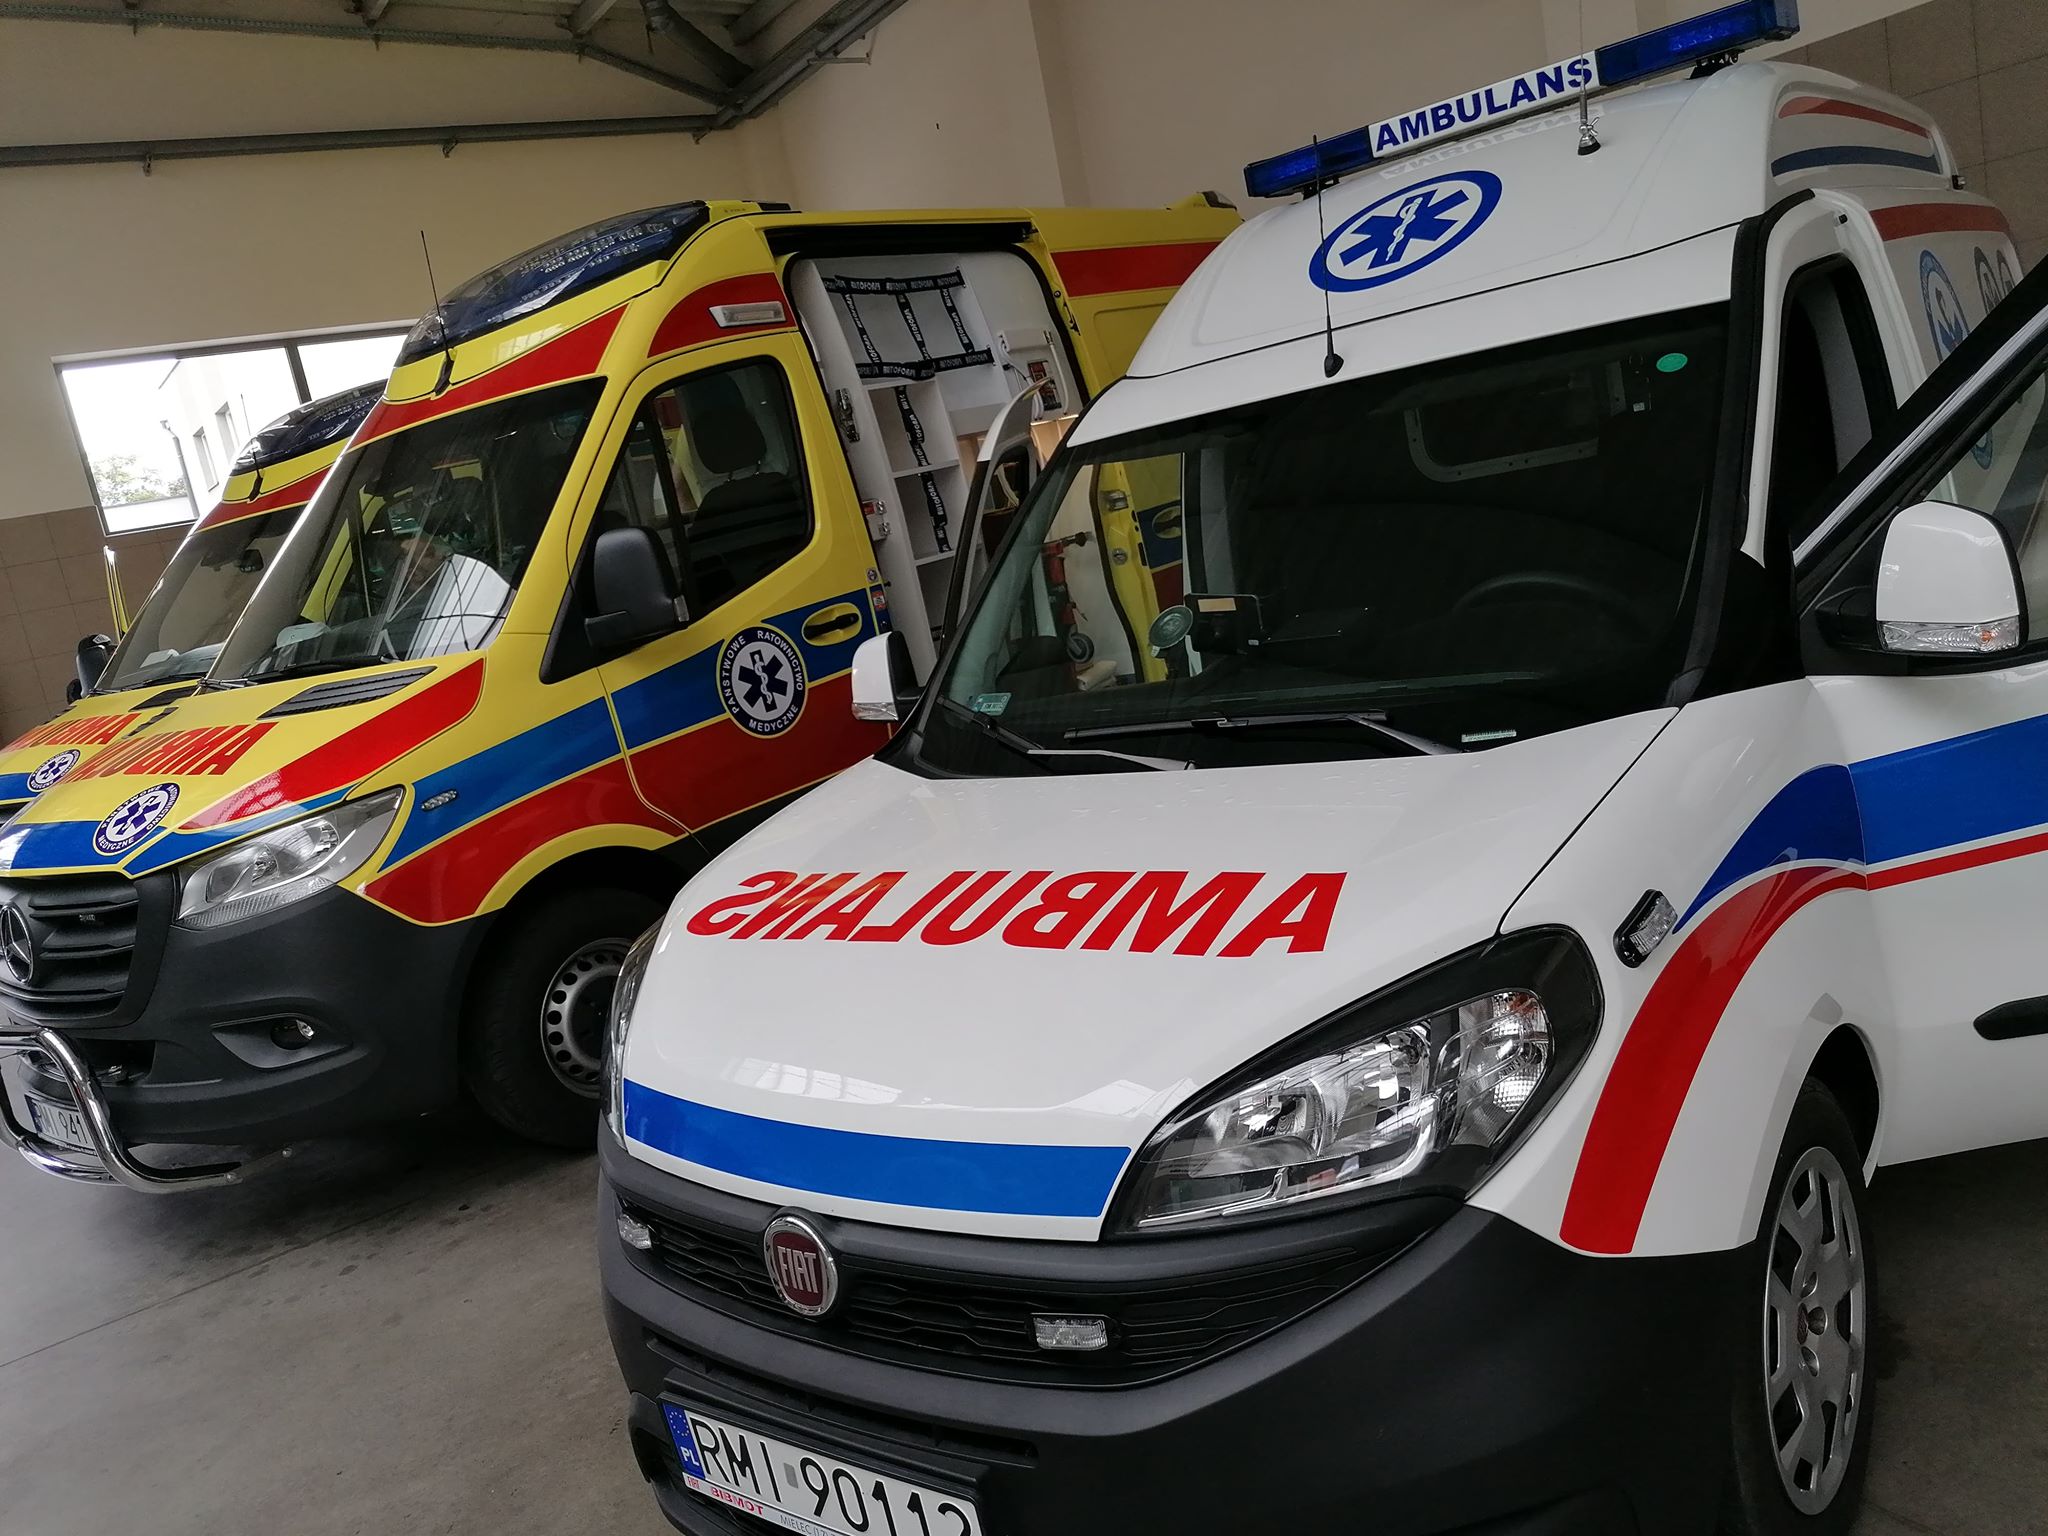 Mieleckie pogotowie wzbogaciło się o nowe karetki i ambulans. Pomógł Urząd Marszałkowski [VIDEO] - Zdjęcie główne